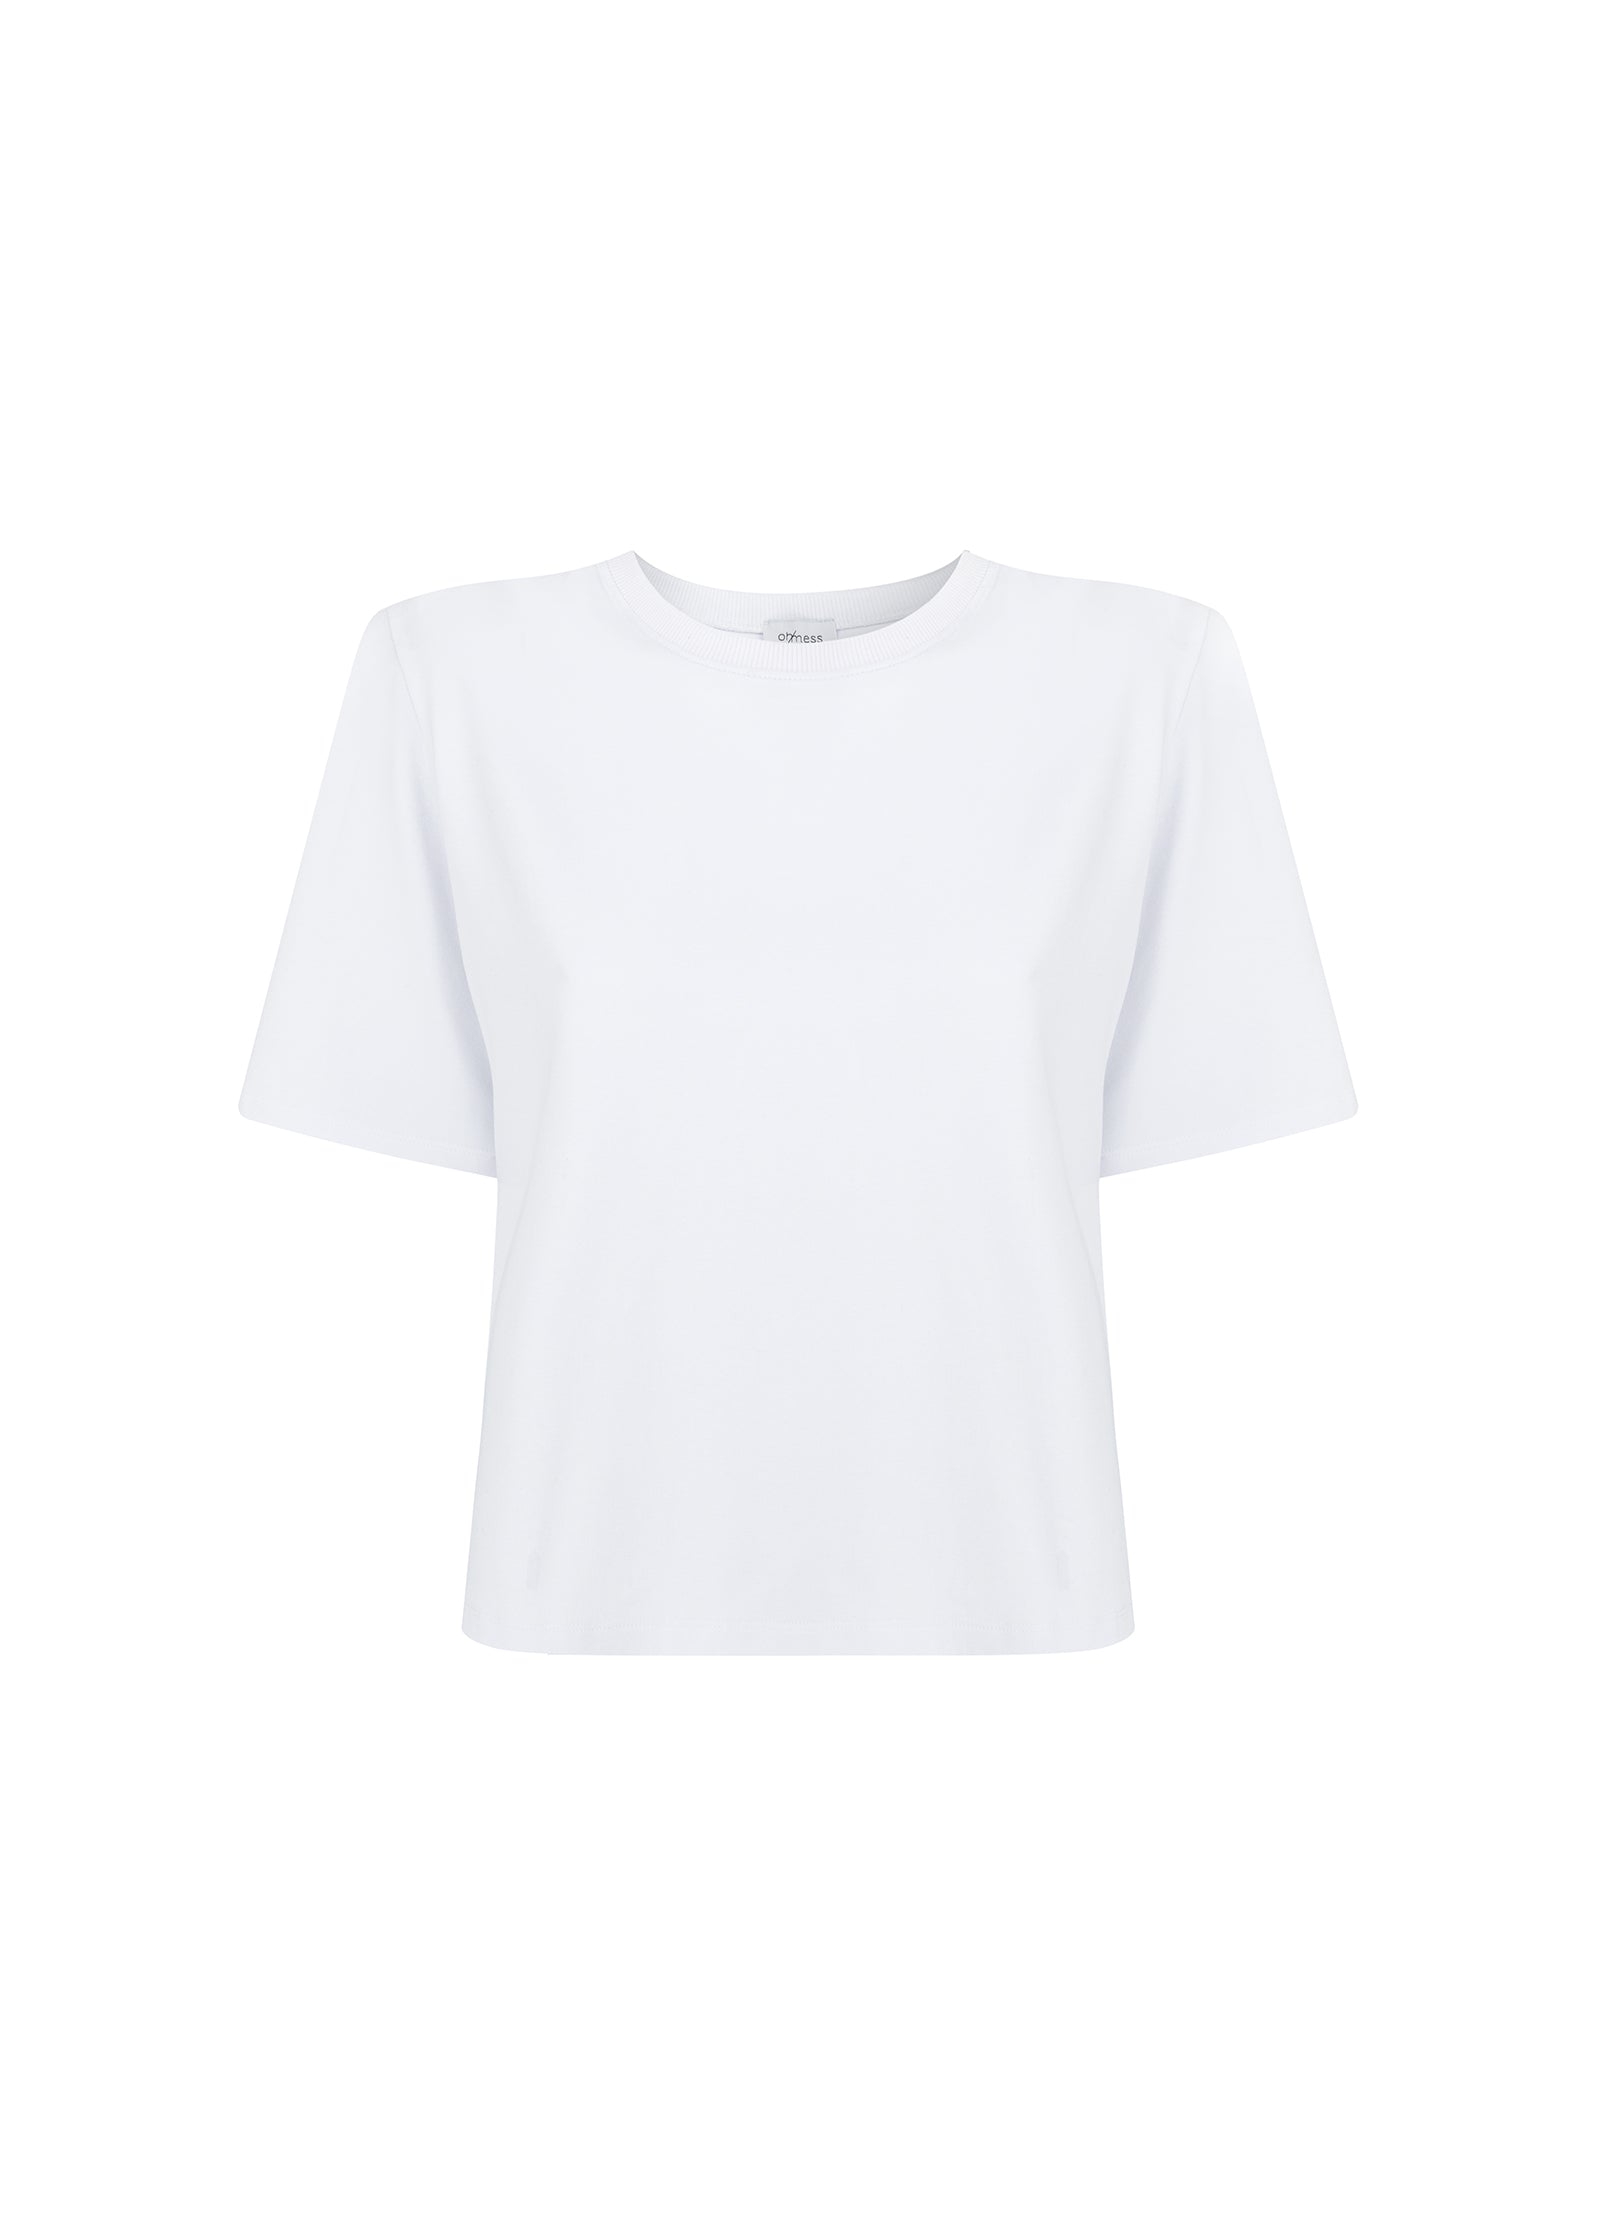 T-shirt Air White